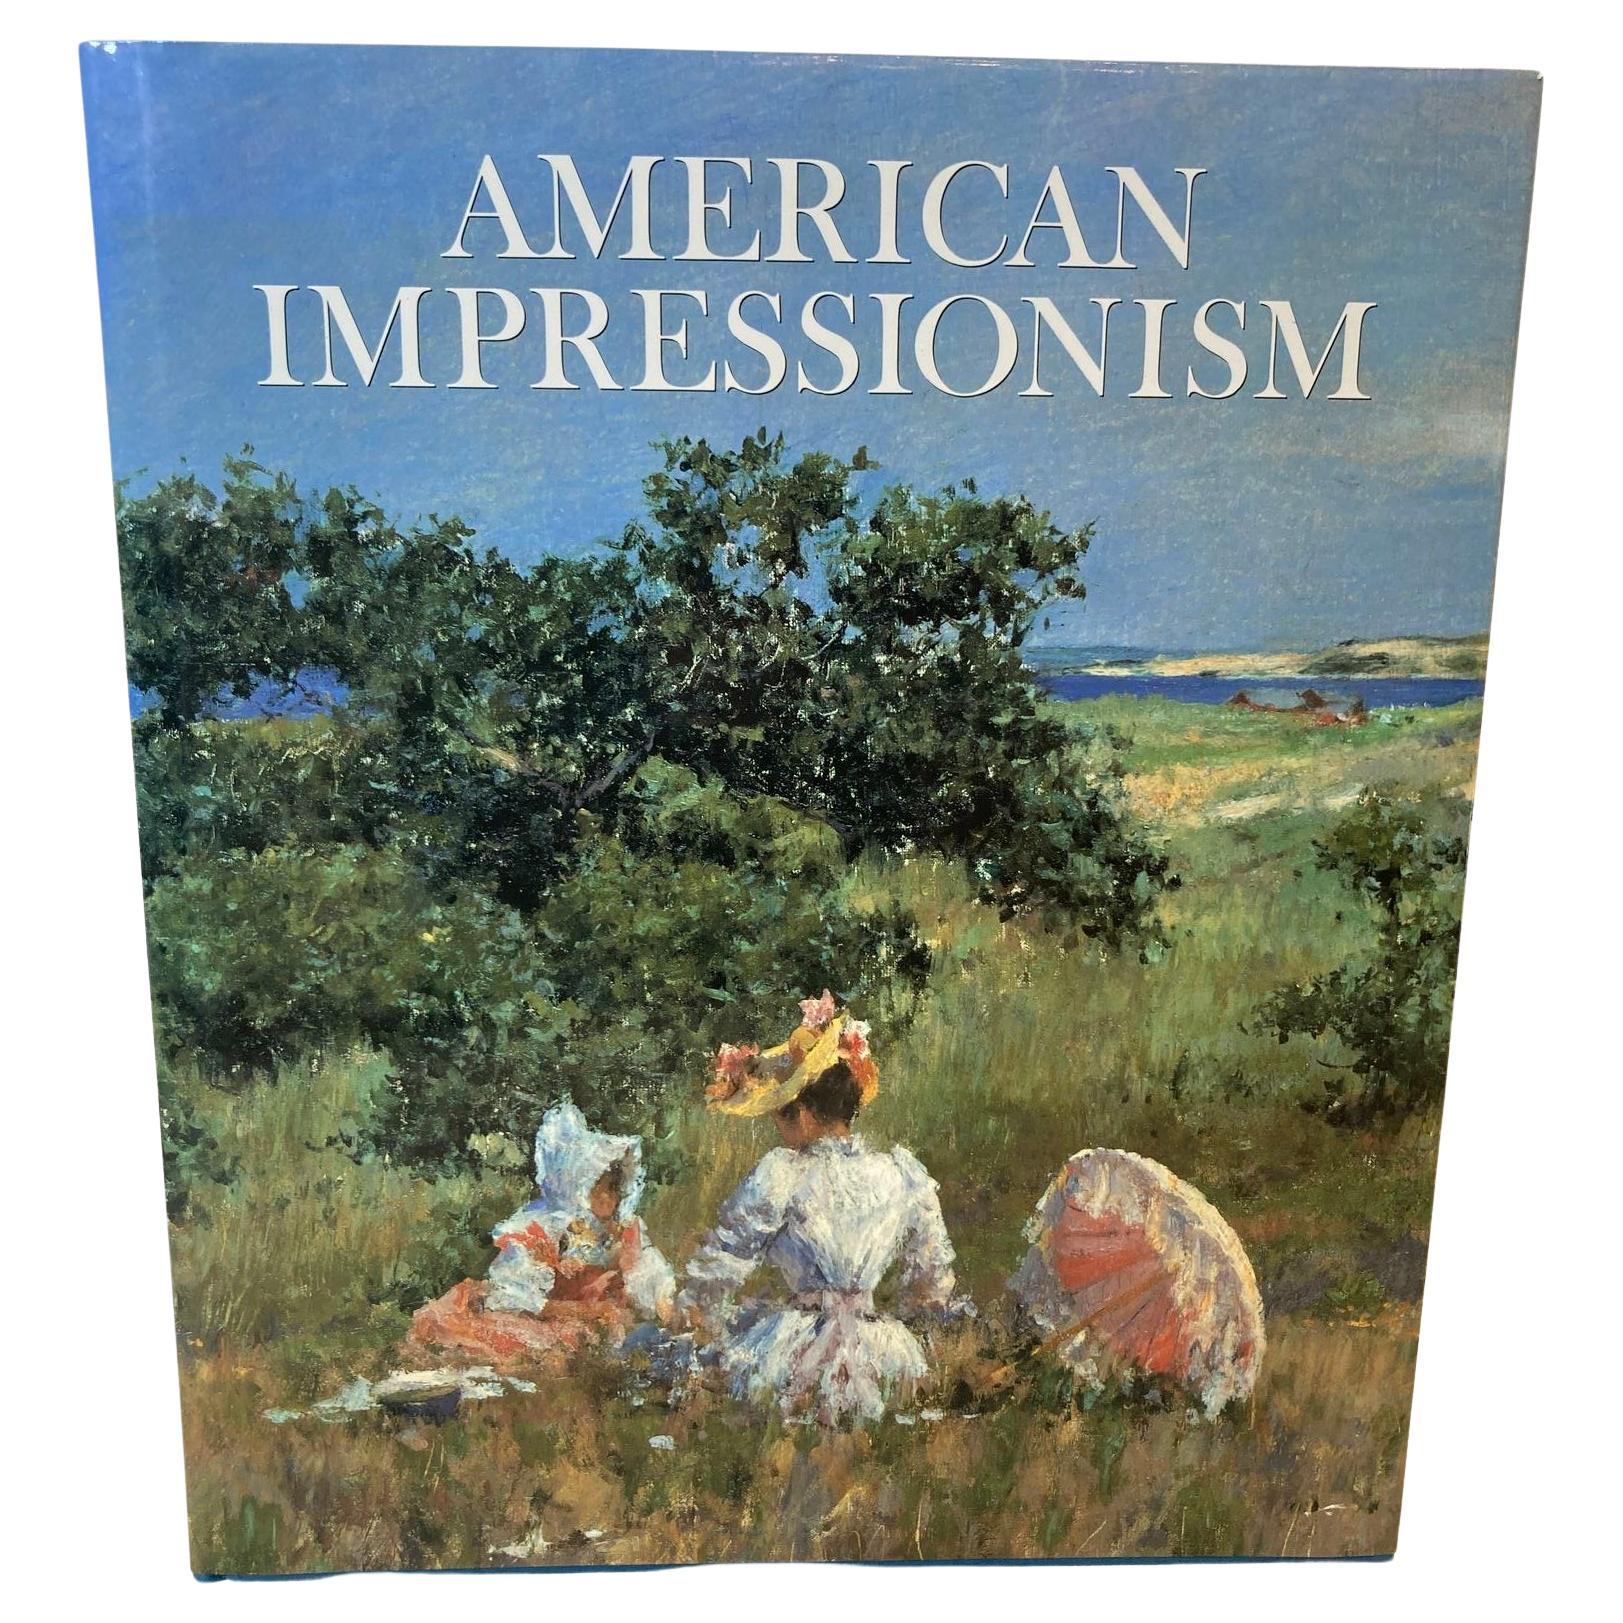 Übergroßes Hardcoverbuch des amerikanischen Impressionismus von William H. Gerdts